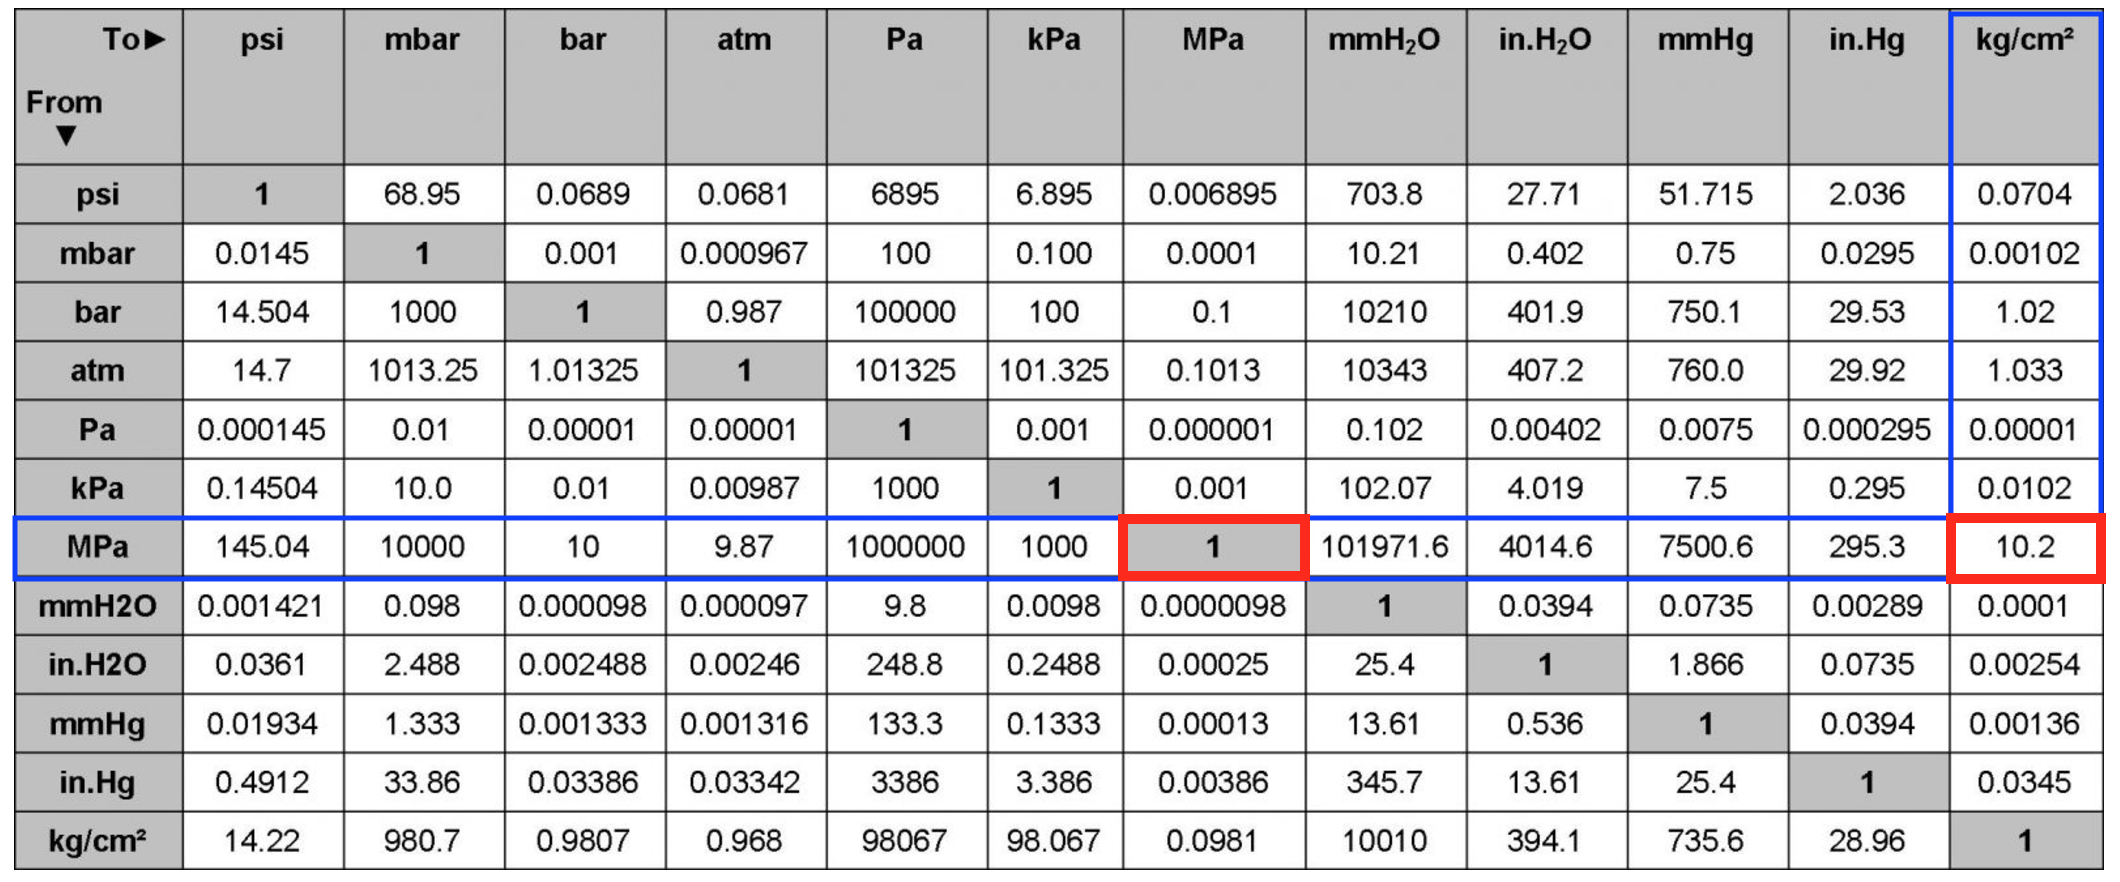 Единицы измерения давления psi. Таблица давления МПА В бар и атм. 1 MPA В кгс/см2. Единицы измерения давления кгс/см2.